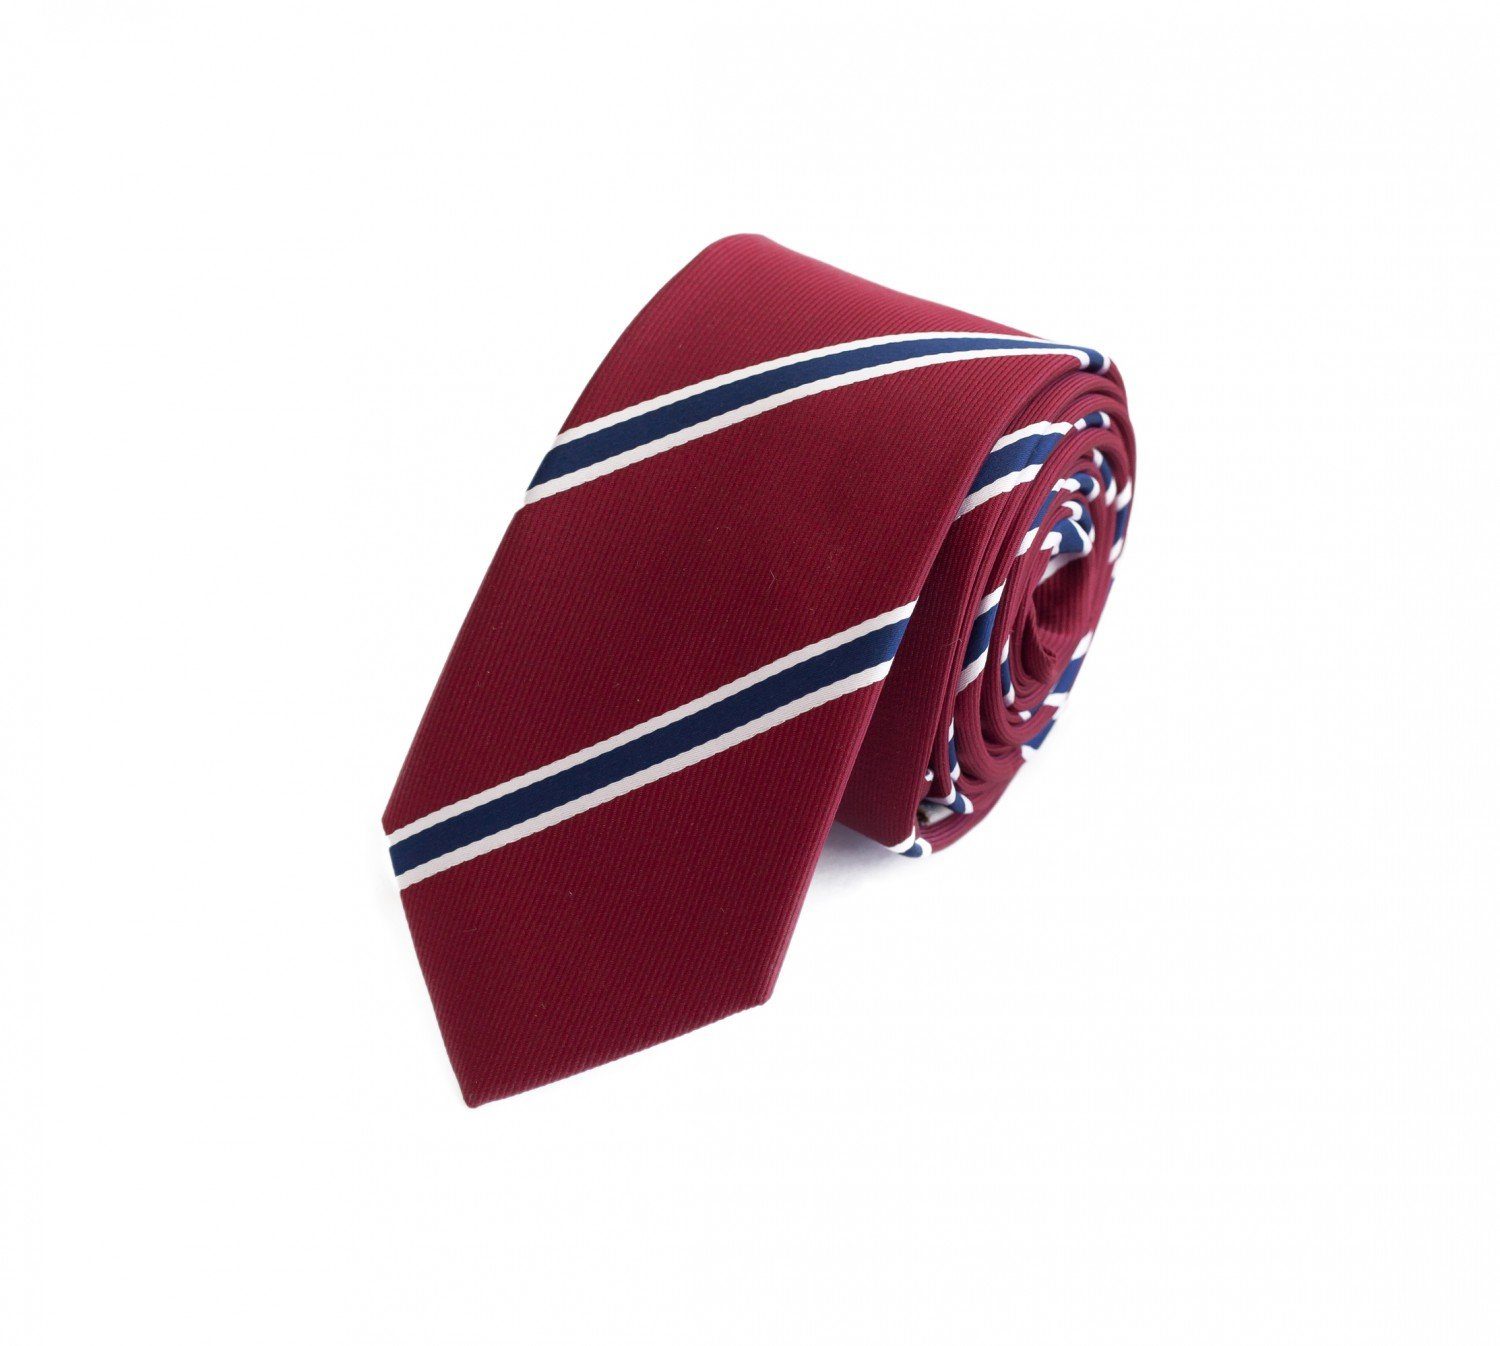 Fabio Farini Krawatte Herren Krawatten mit Farbton Rot - Schlips in 6cm (ohne Box, Gestreift) Schmal (6cm), Rot/Blau/Weiß